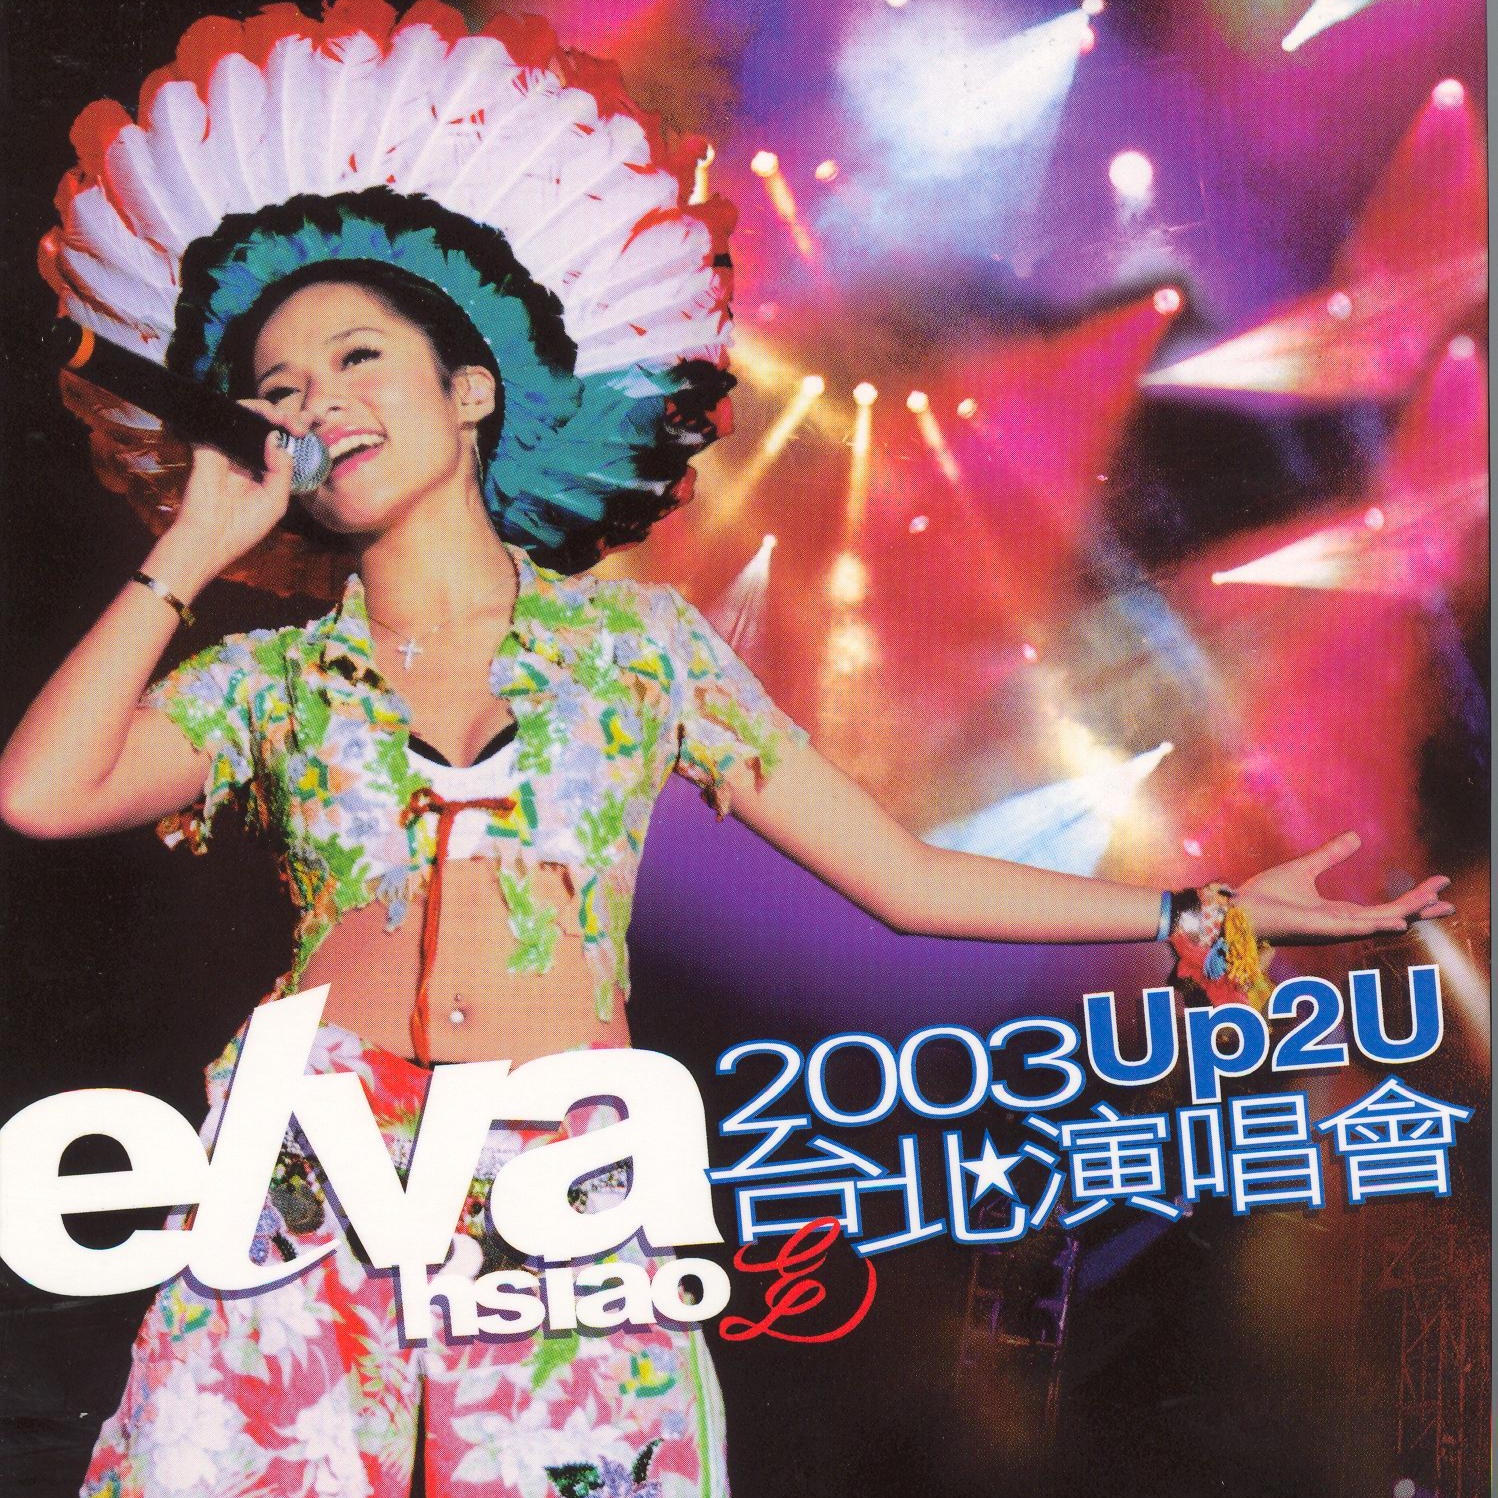 Elva2003Up2U tai bei yan chang hui